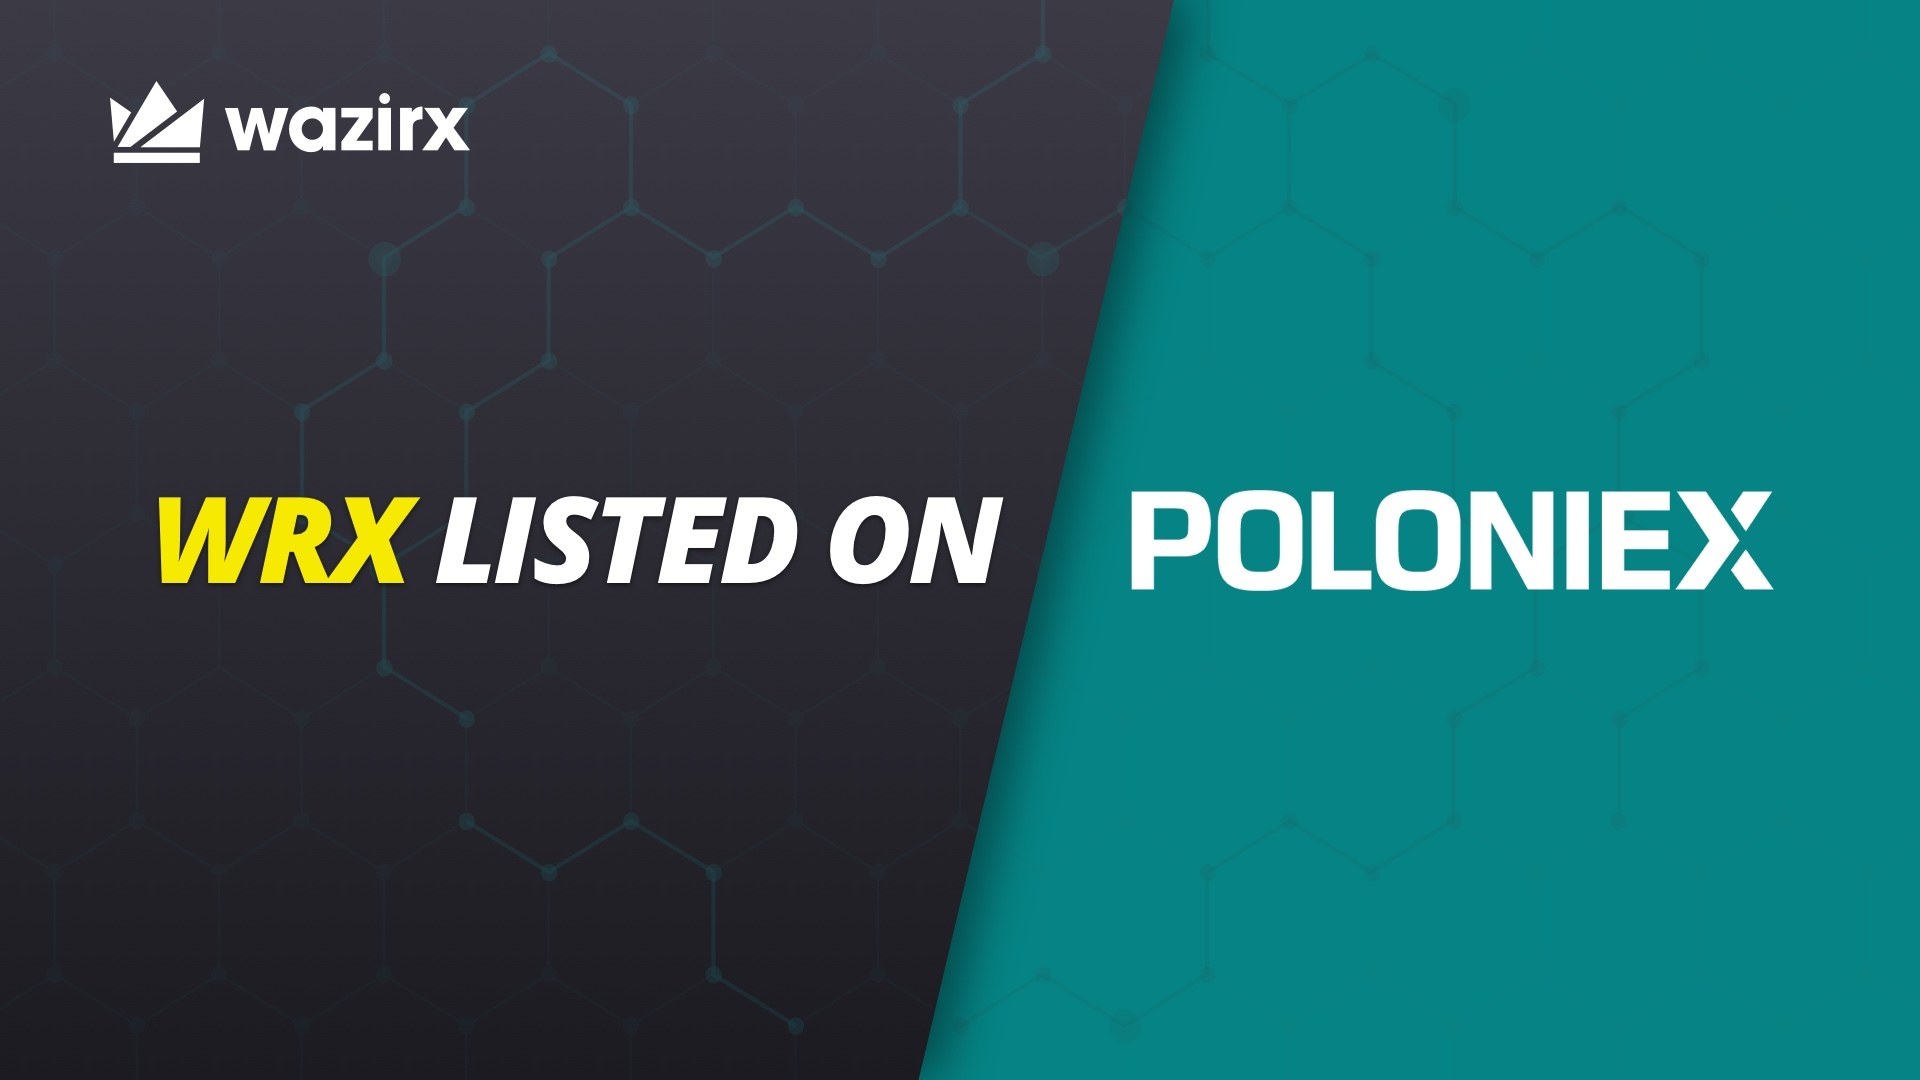 WRX is listed on Poloniex ️ - WazirX Blog